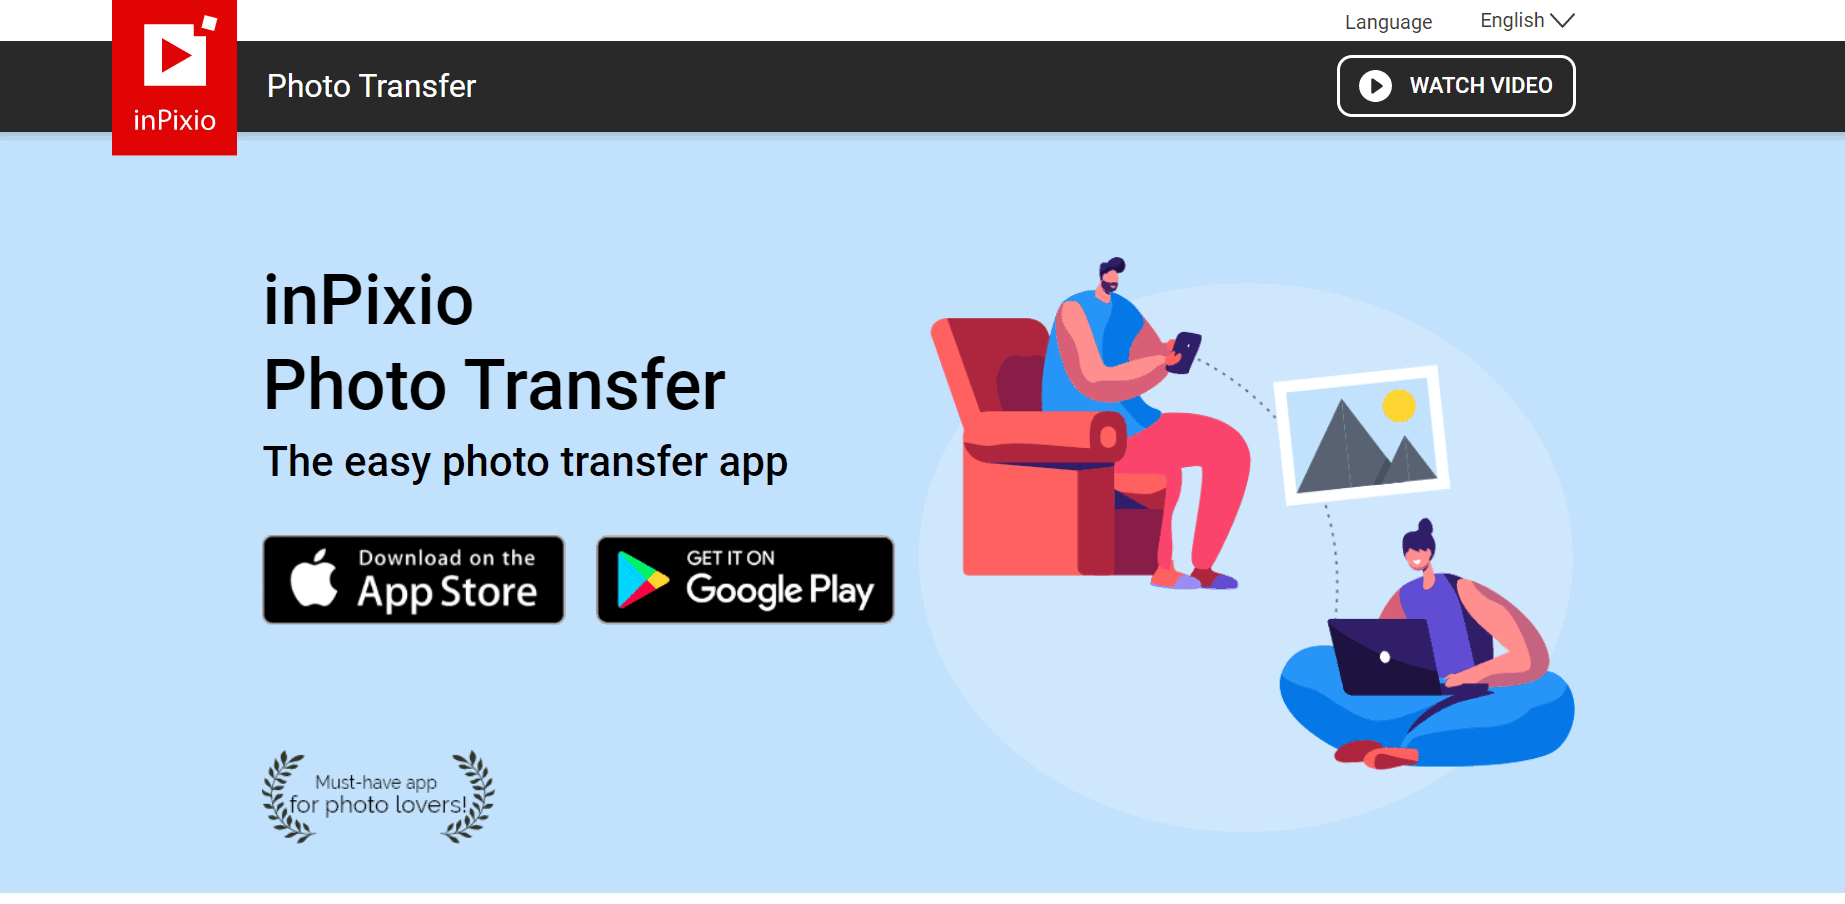 inpixio-photo-transfer-app